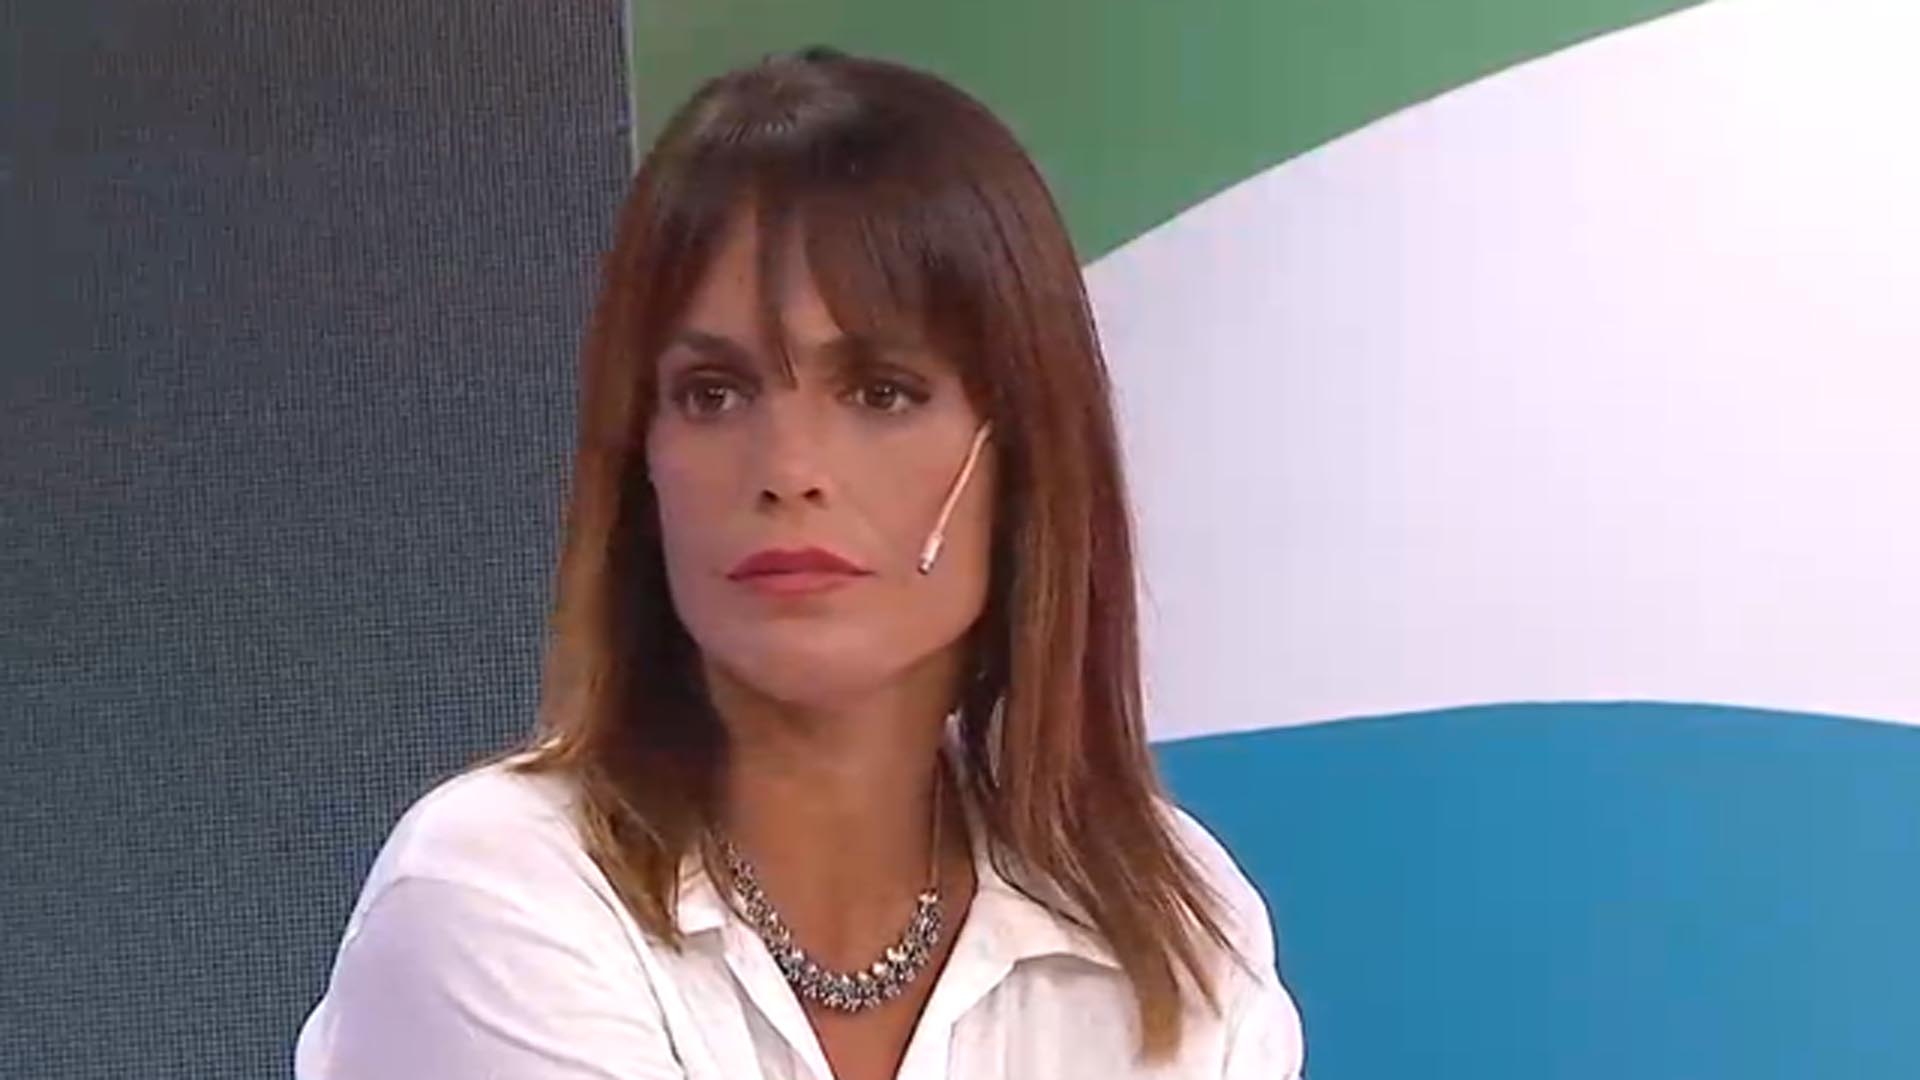 El desesperado pedido laboral de Verónica Monti, la ex de Sergio Denis: “No puedo ganar menos de 300 lucas”